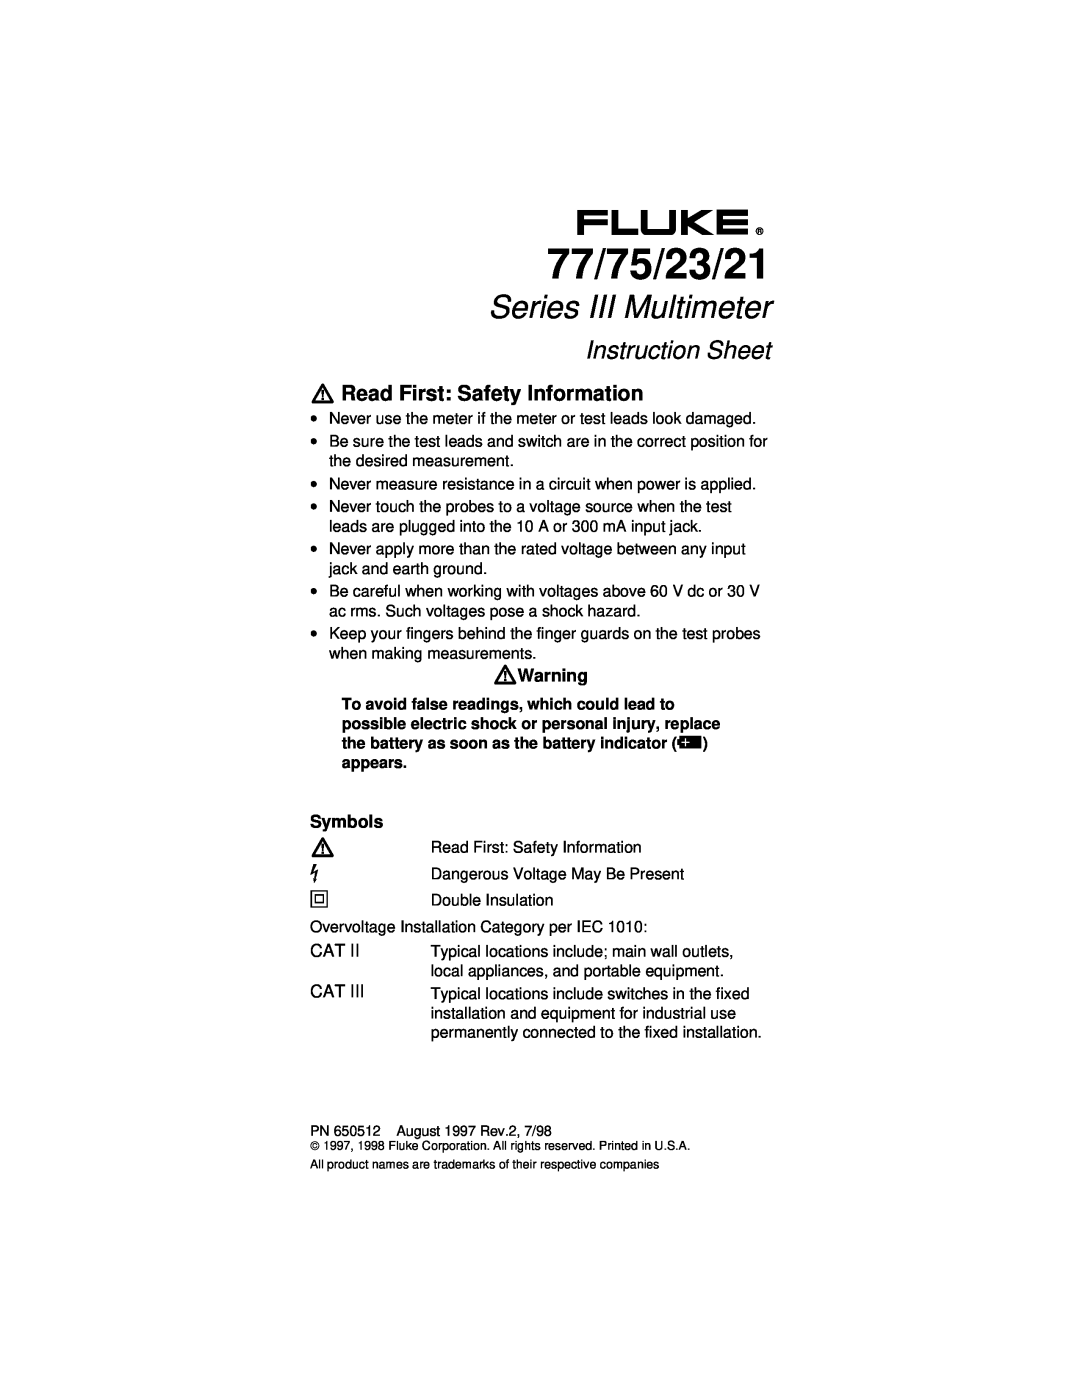 Fluke instruction sheet WWarning, Symbols, 77/75/23/21, Series III Multimeter, Instruction Sheet, W Y T, Cat Cat 